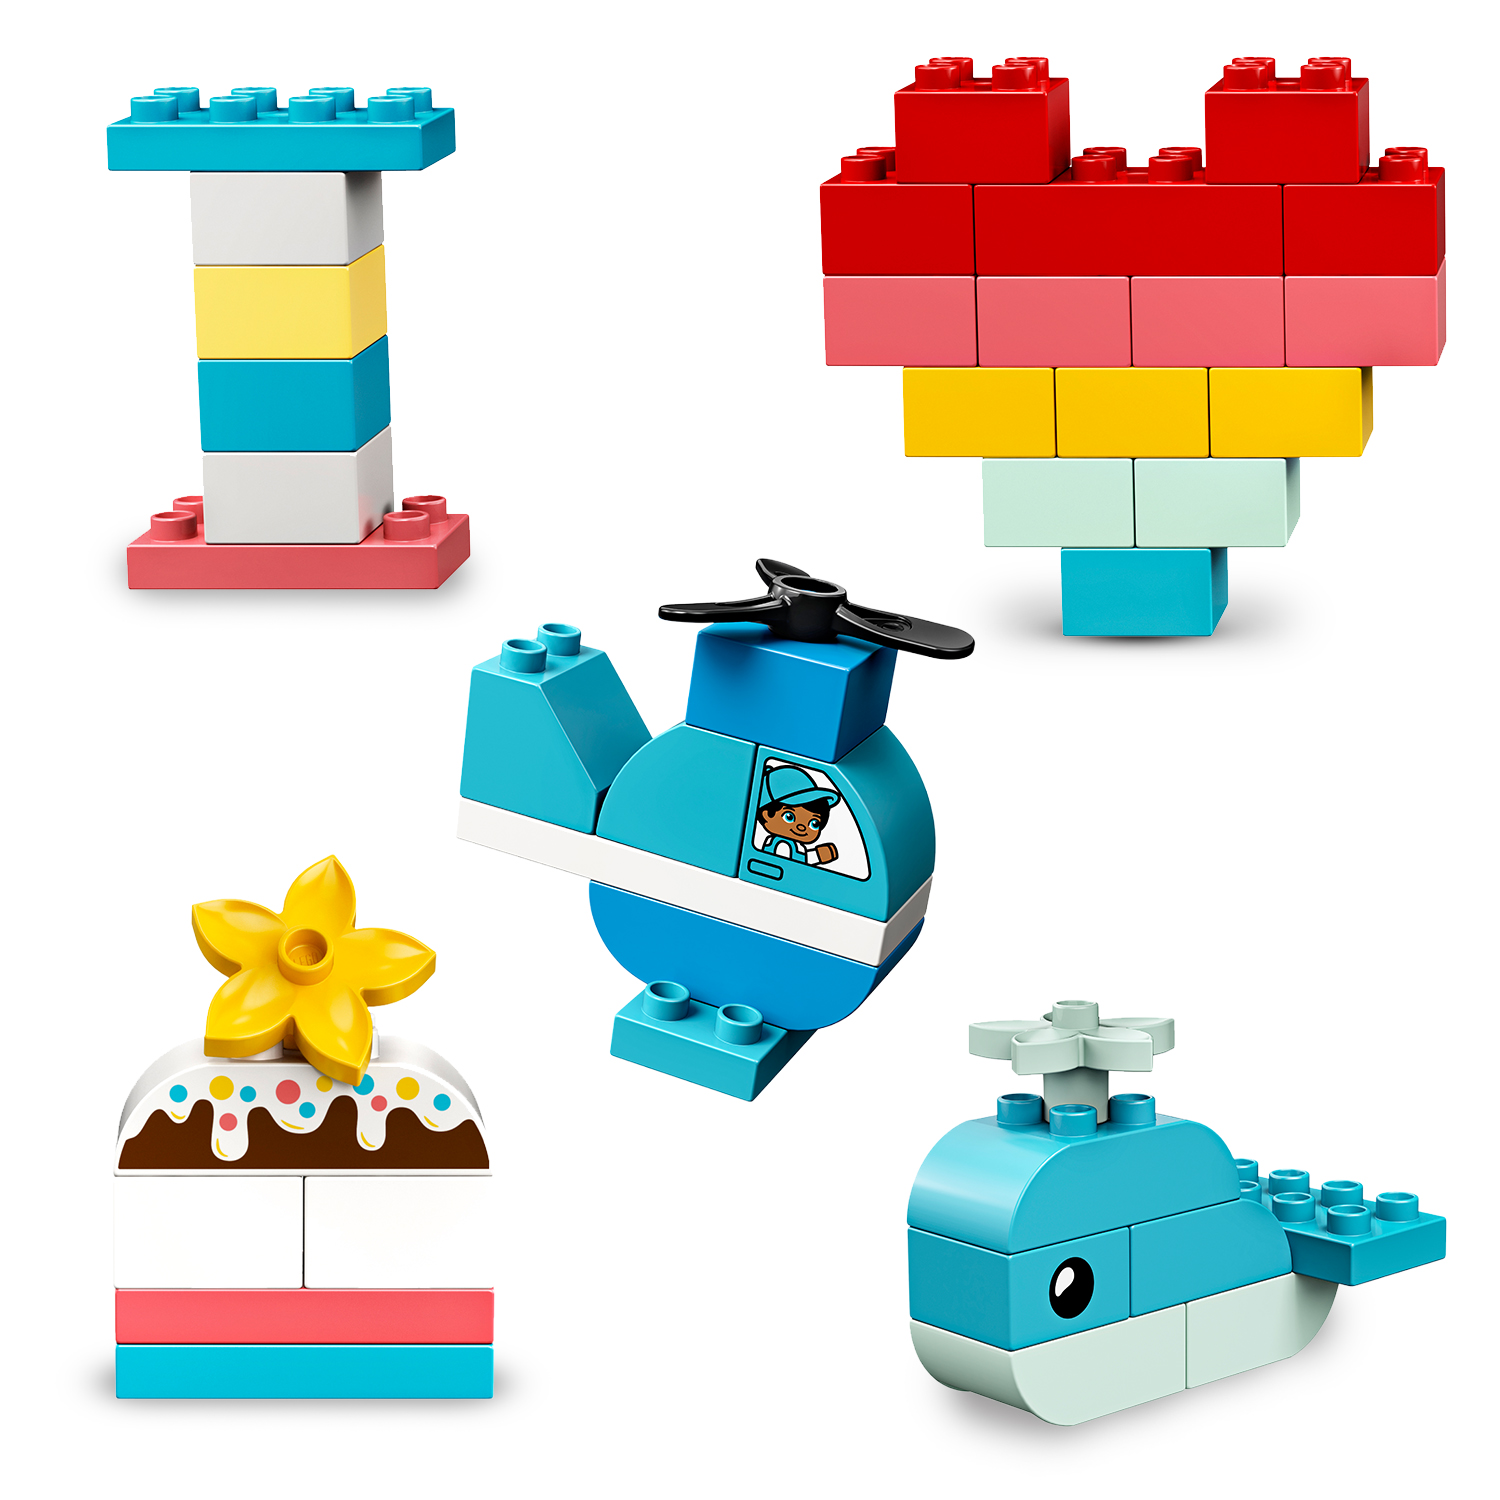 Scatola cuore - 10909 - LEGO DUPLO, Lego